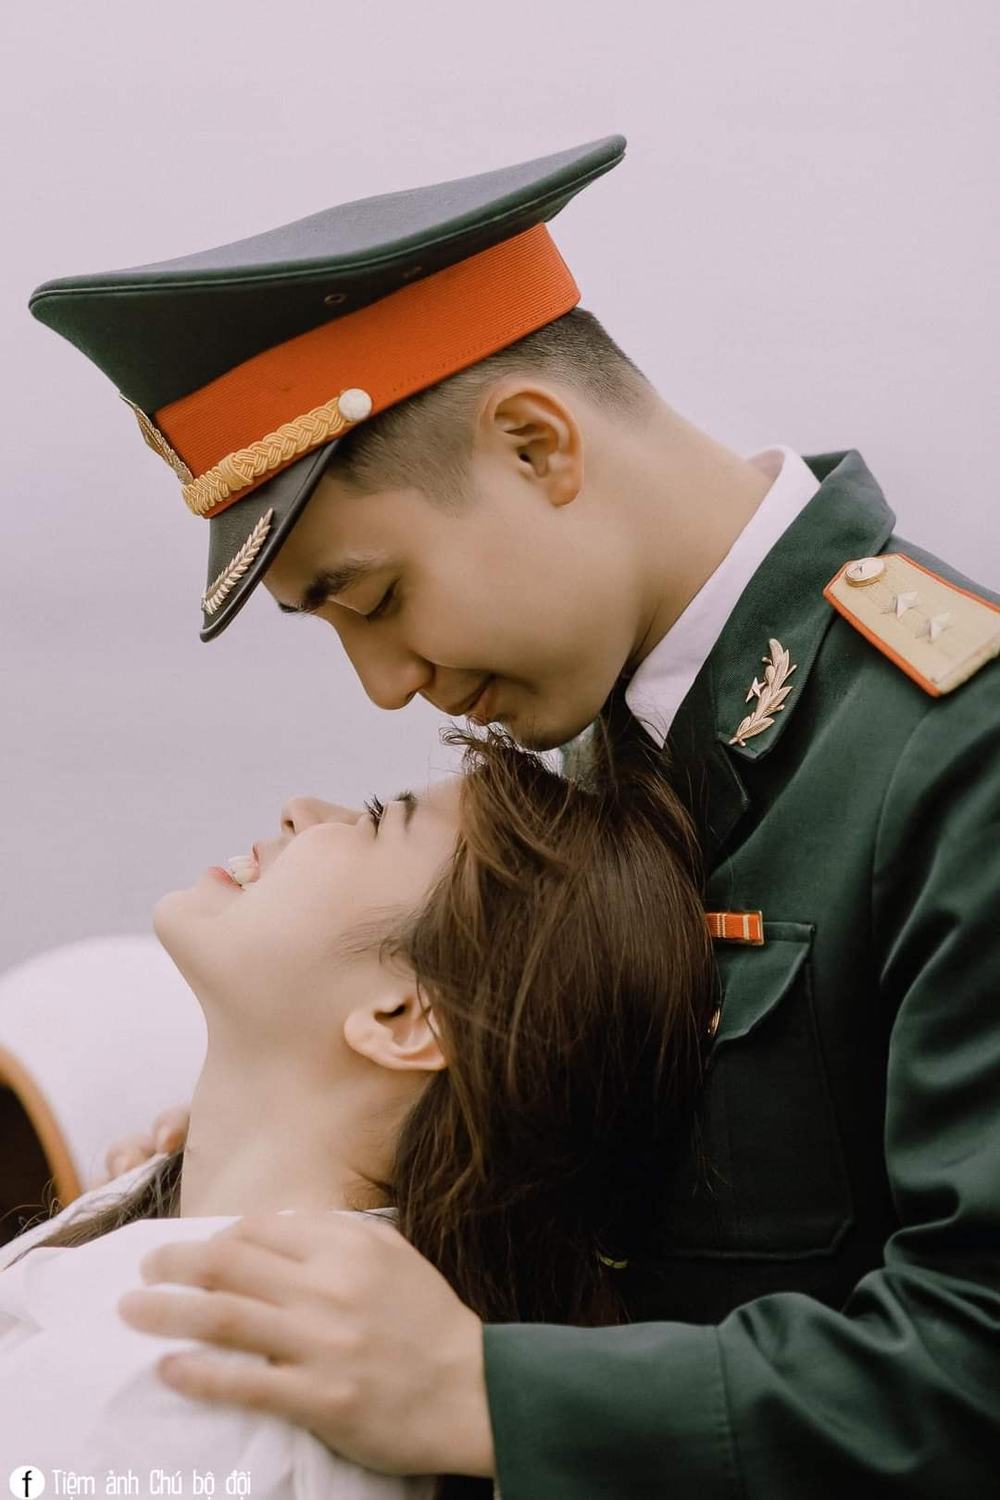 Hình ảnh tình yêu người lính - Những hình ảnh tình yêu đầy xúc cảm giữa các lính, những ánh mắt đầy ý nghĩa, những nụ cười hạnh phúc trong những lúc bất ngờ. Đó là chứng nhân cho tình yêu vượt thời gian, giữa cuộc đời chông gai của quân đội.